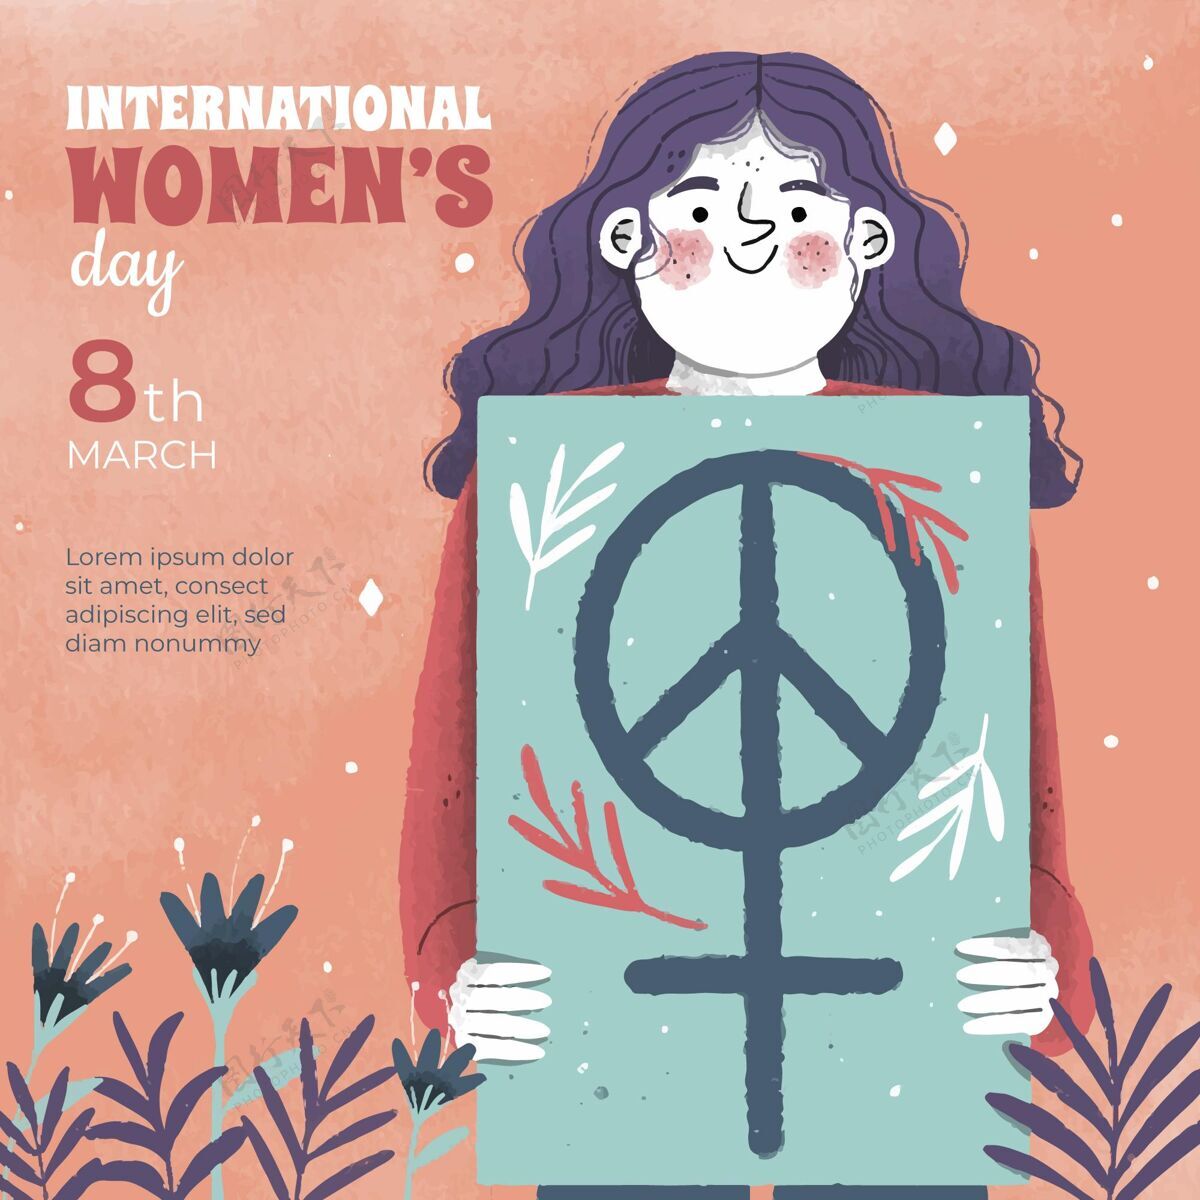 事件手绘国际妇女节快乐自由权利3月8日